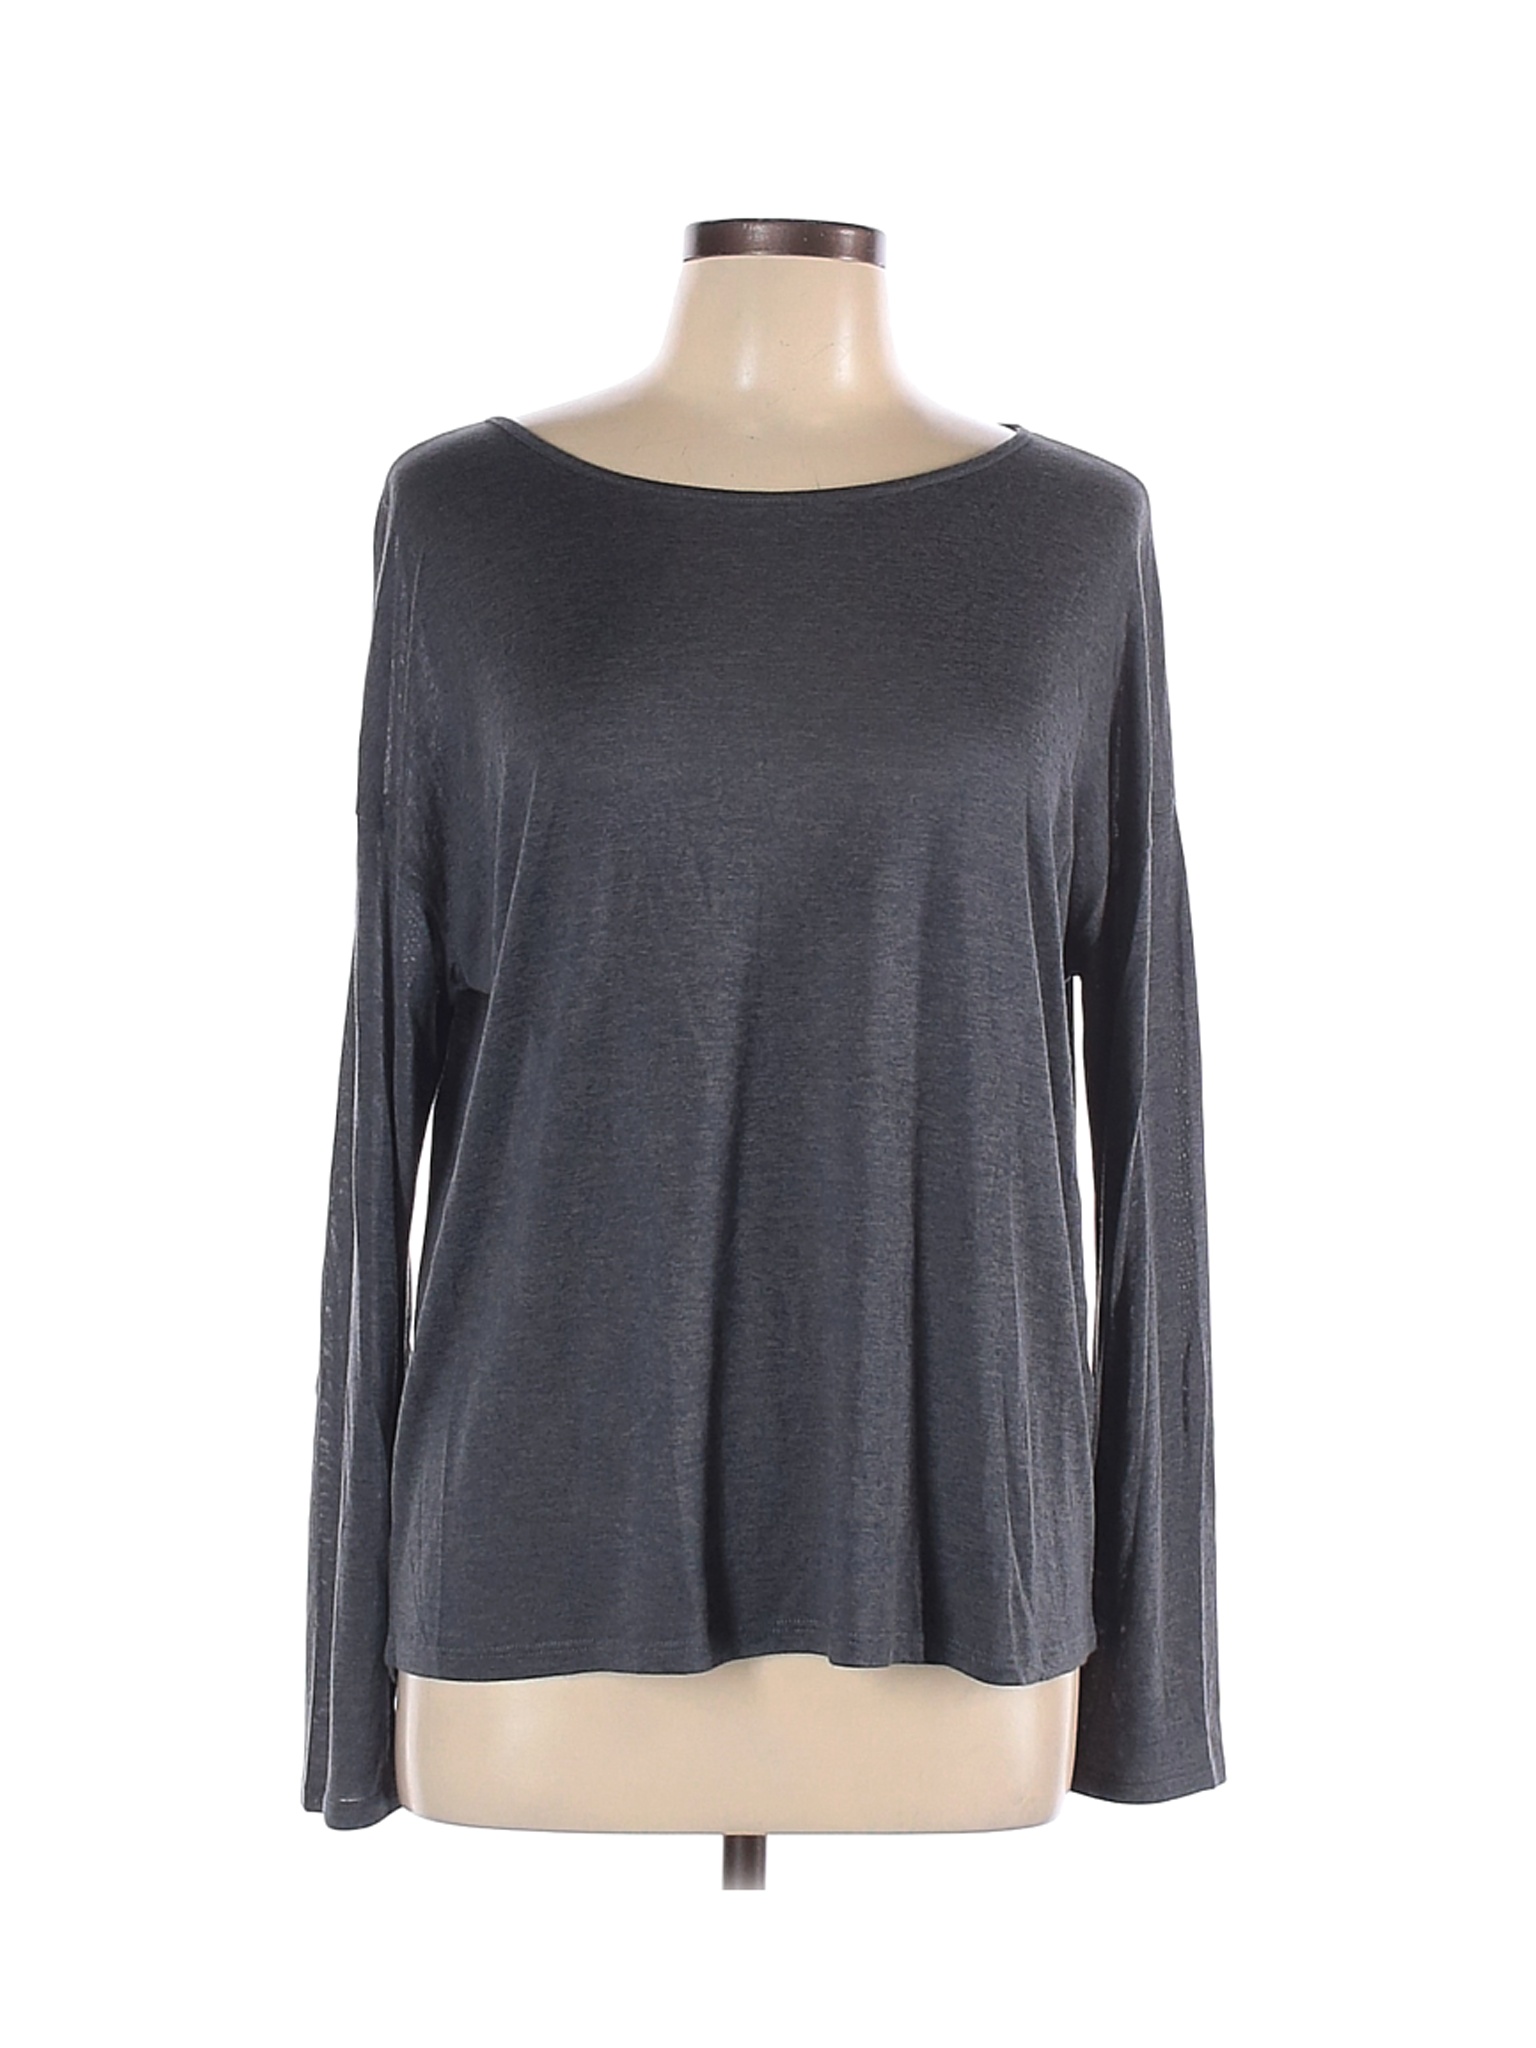 Tahari Women Gray Long Sleeve T-Shirt L | eBay